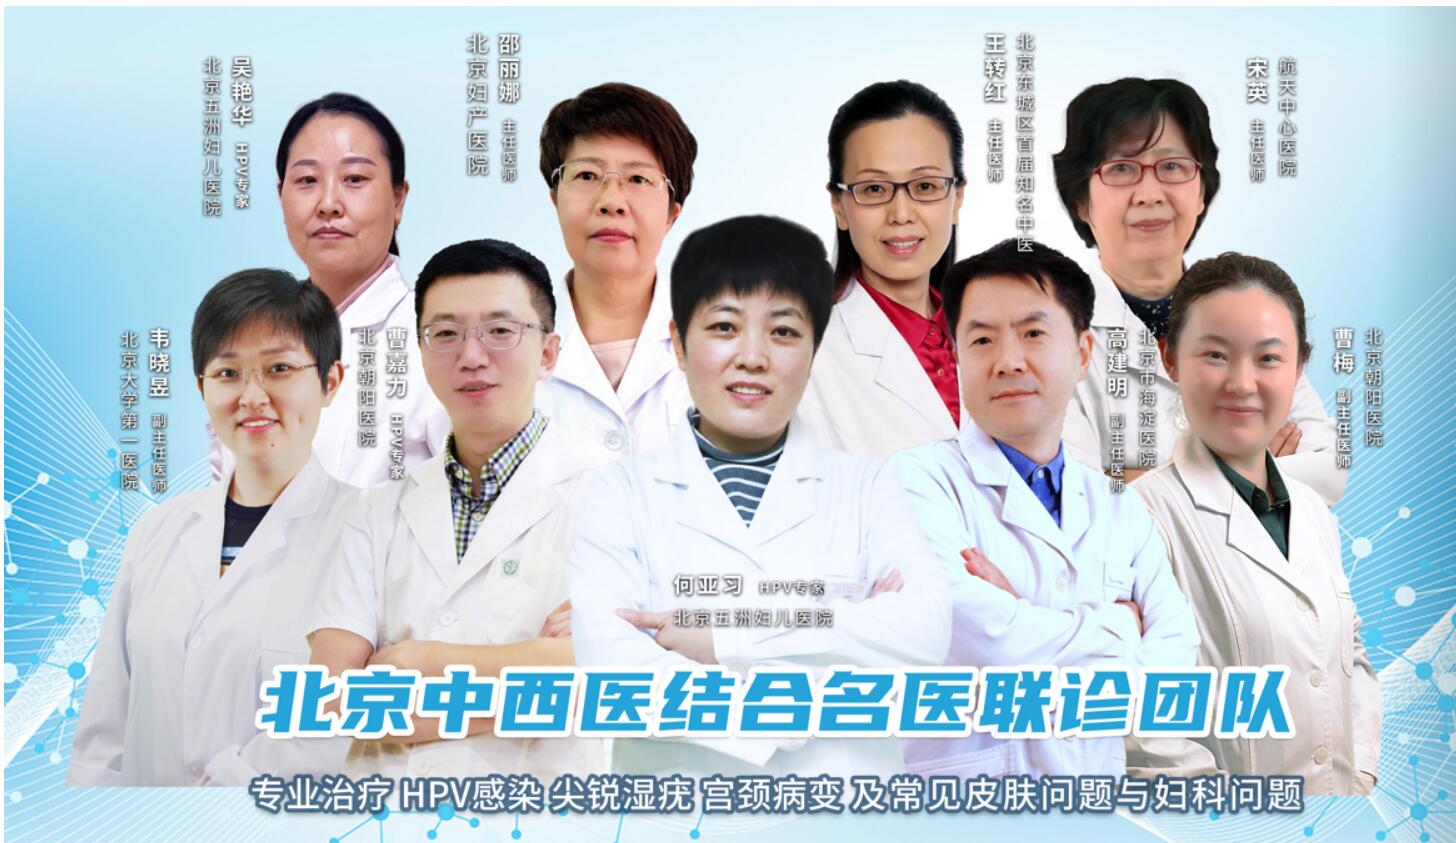 中西医专家联诊团队成立，多学科联合会诊，在家享受三甲医生服务